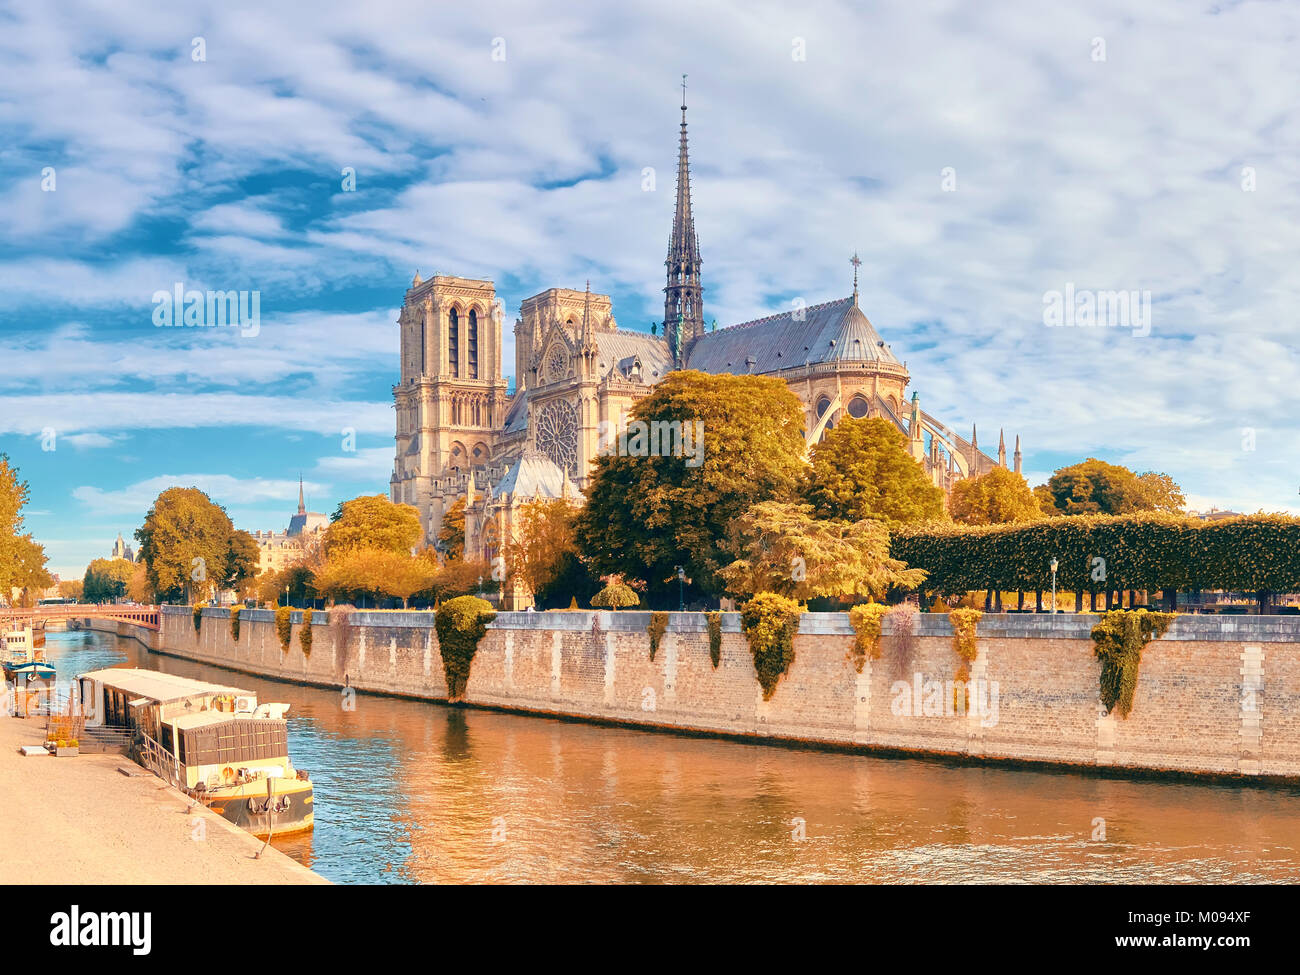 Die Kathedrale Notre Dame in Paris an einem hellen Tag im Herbst, Panorama Bild Stockfoto